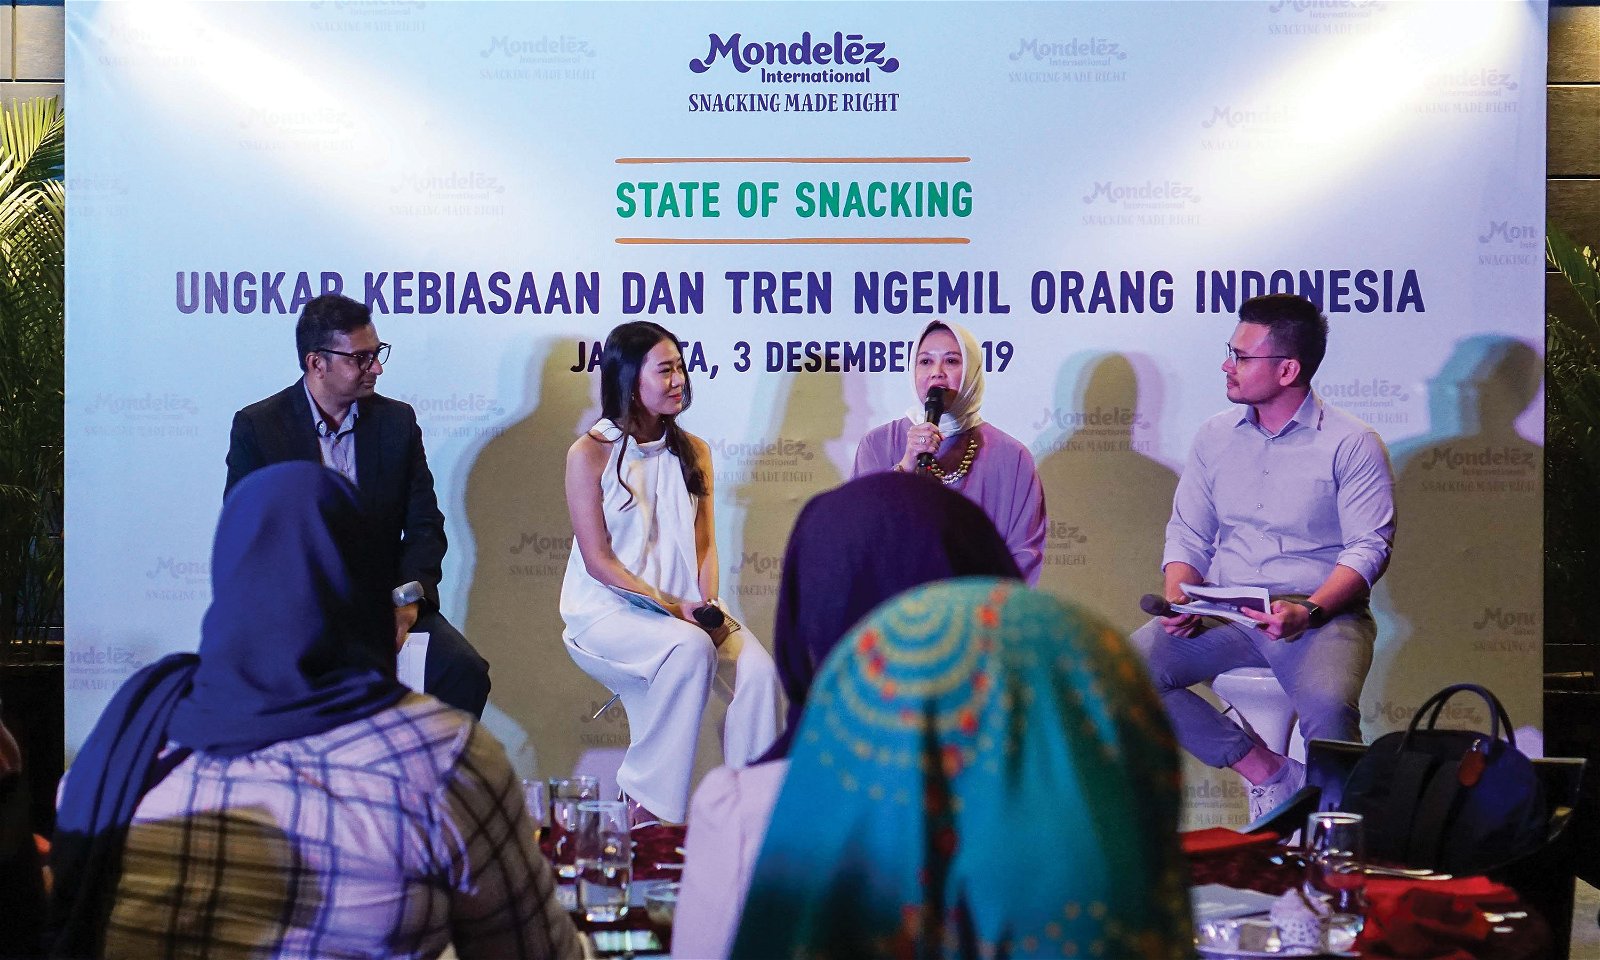 State of Snacking, Data Kebiasaan Ngemil dari Mondelez